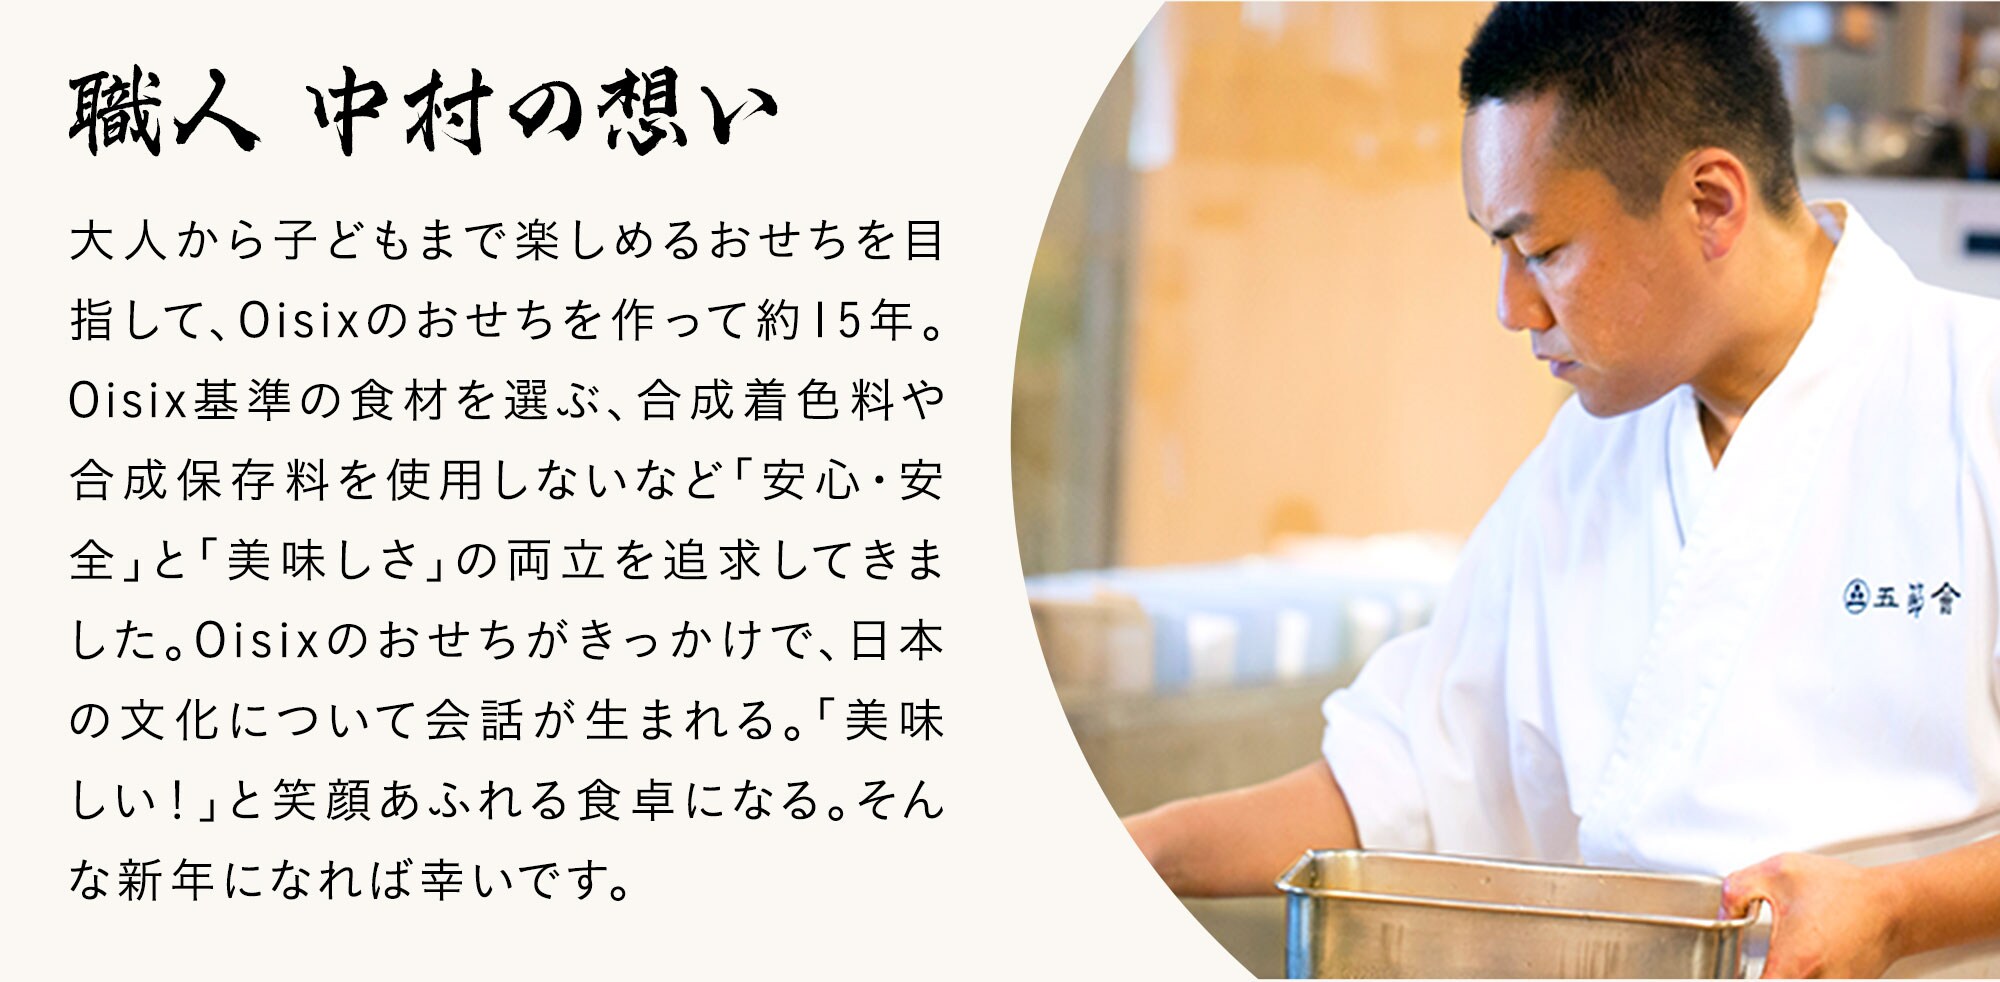 職人 中村の想い：大人から子どもまで楽しめるおせちを目指して、Oisixのおせちを作って約15年。Oisix基準の食材を選ぶ、合成着色料や合成保存料を使用しないなど「安心・安全」と「美味しさ」の両立を追求してきました。Oisixのおせちがきっかけで、日本の文化について会話が生まれる。「美味しい！」と笑顔あふれる食卓になる。そんな新年になれば幸いです。